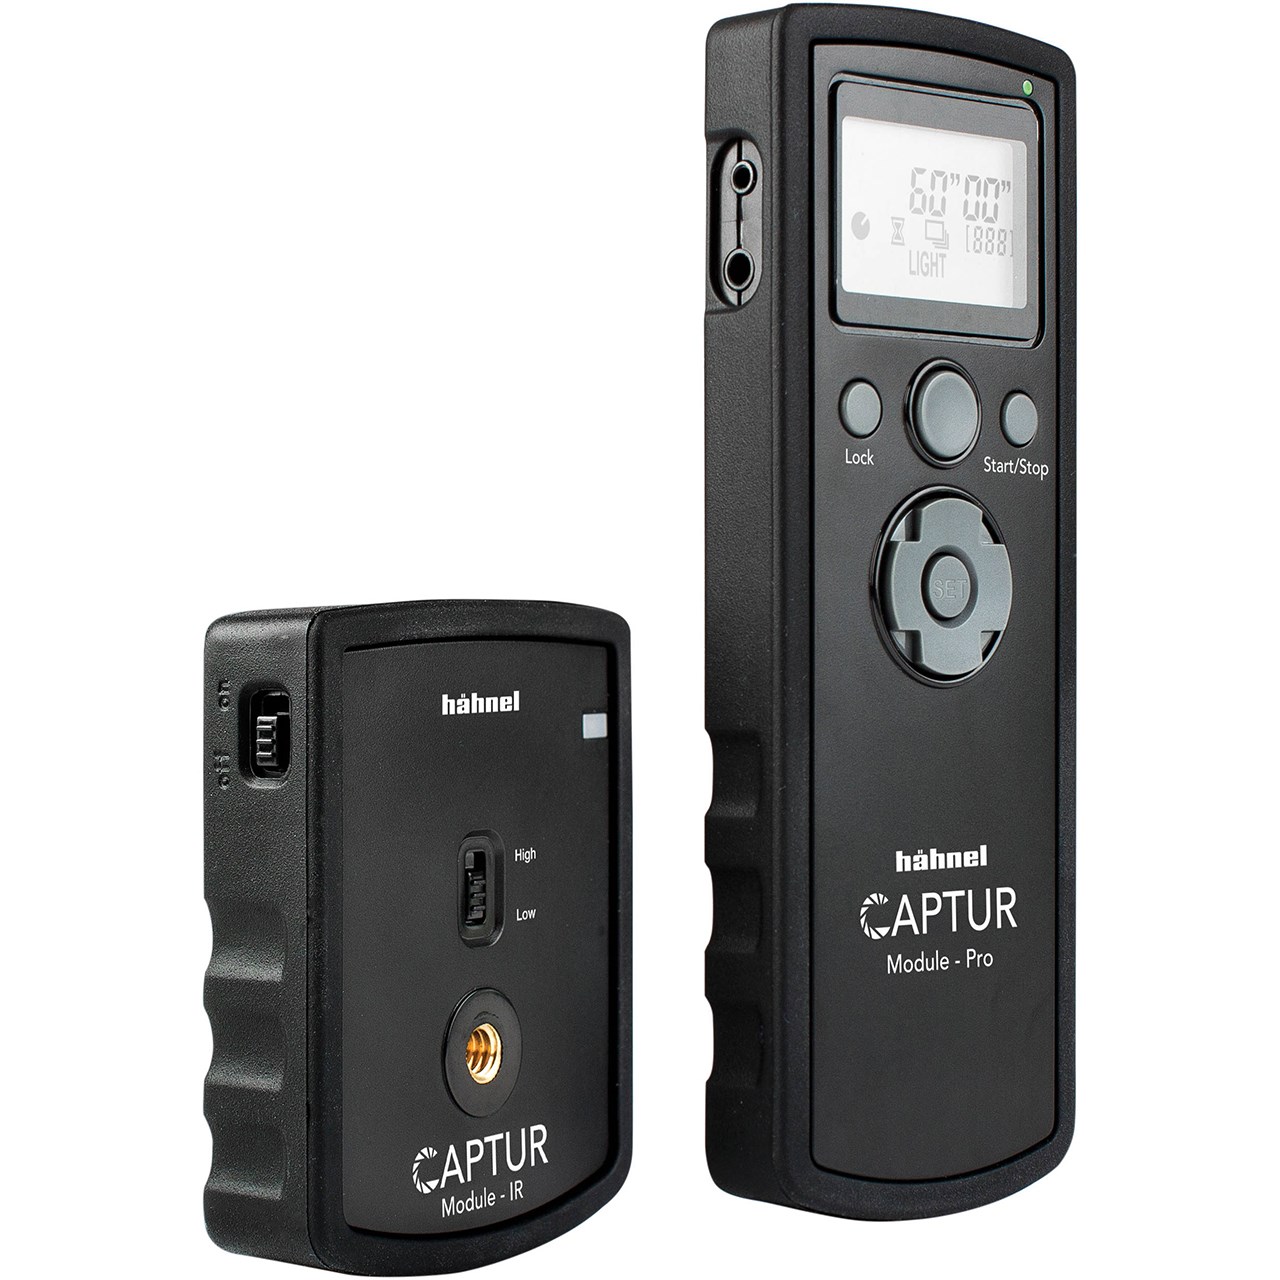 ریموت کنترل دوربین و فلاش هنل مدل Captur Module-Pro